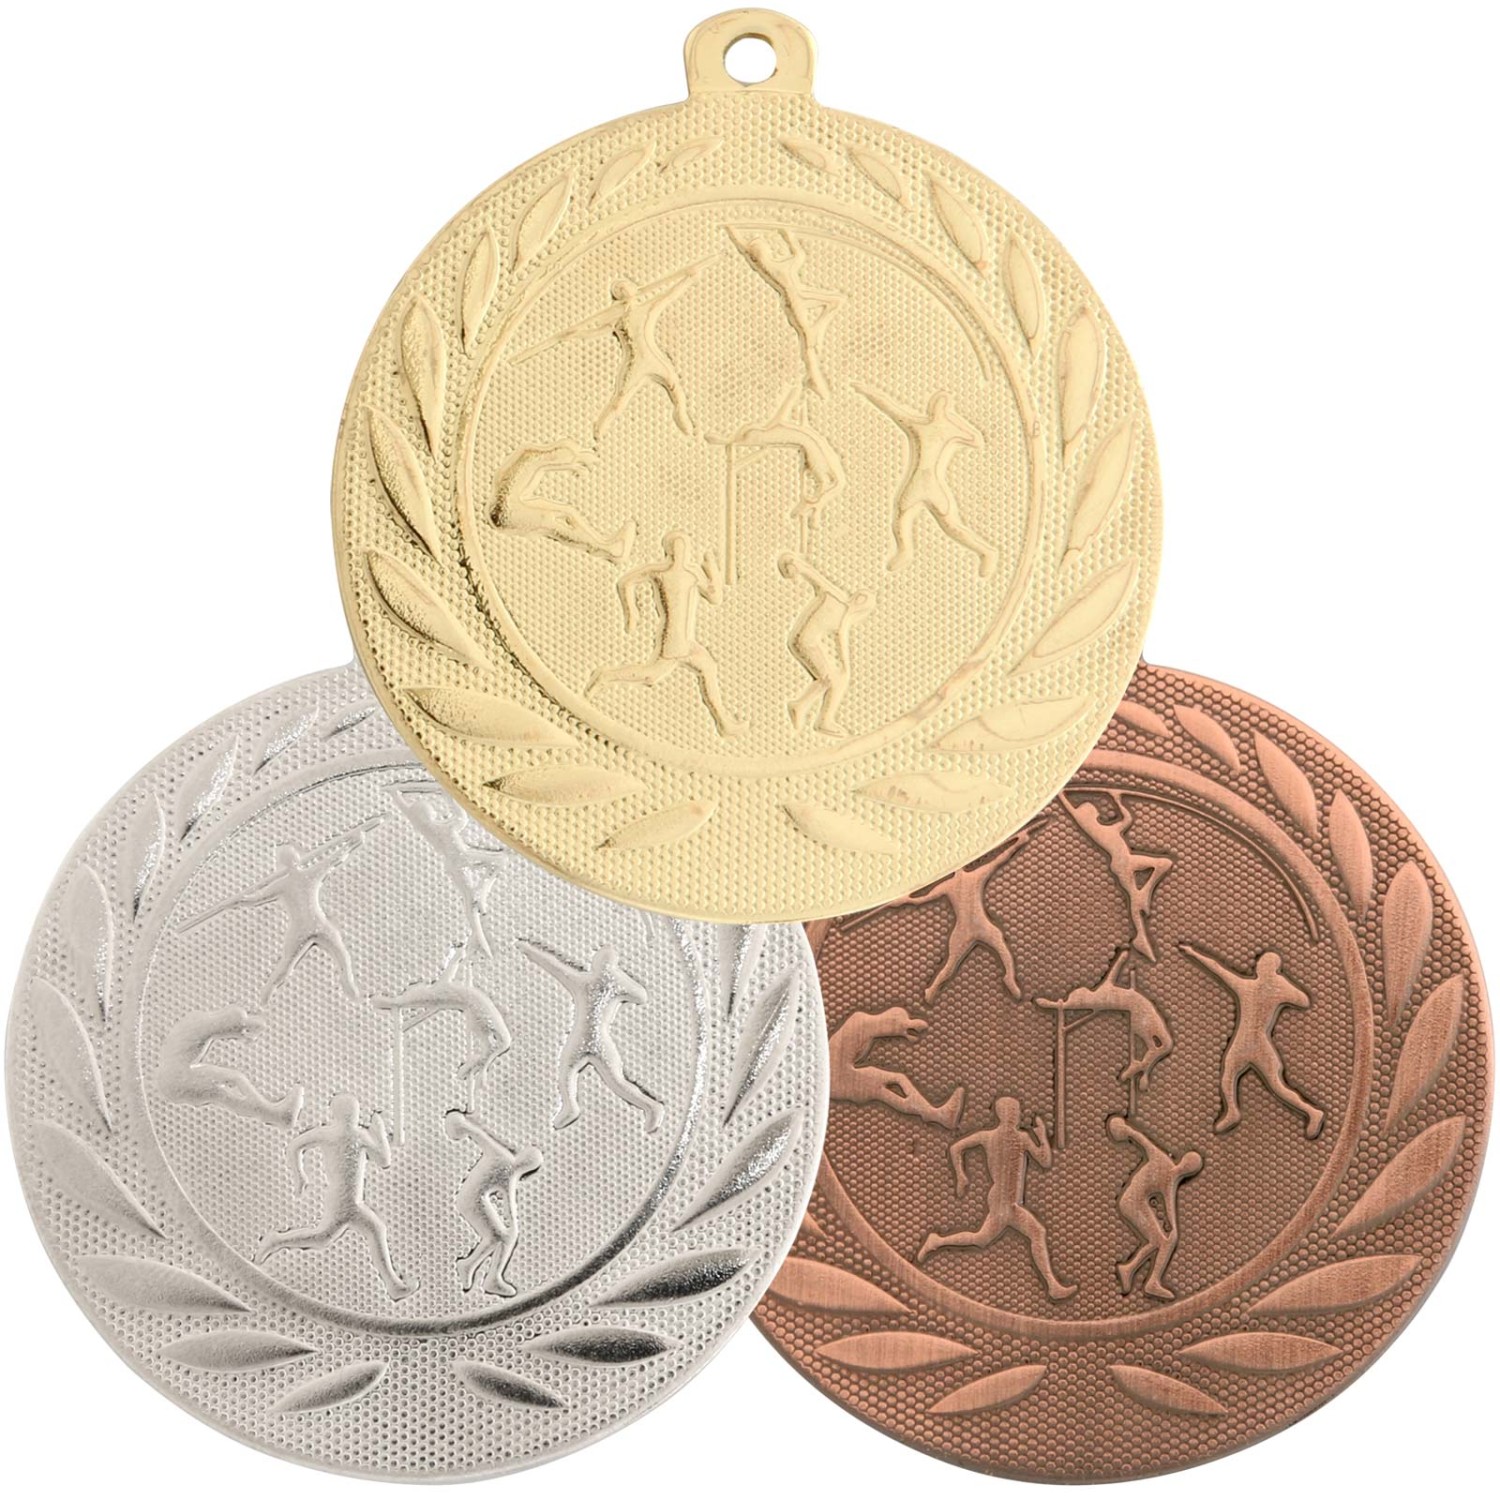 1. Foto Medaille Leichtathletik aus Stahl gold silber bronze 50 mm (Sorte: bronze)